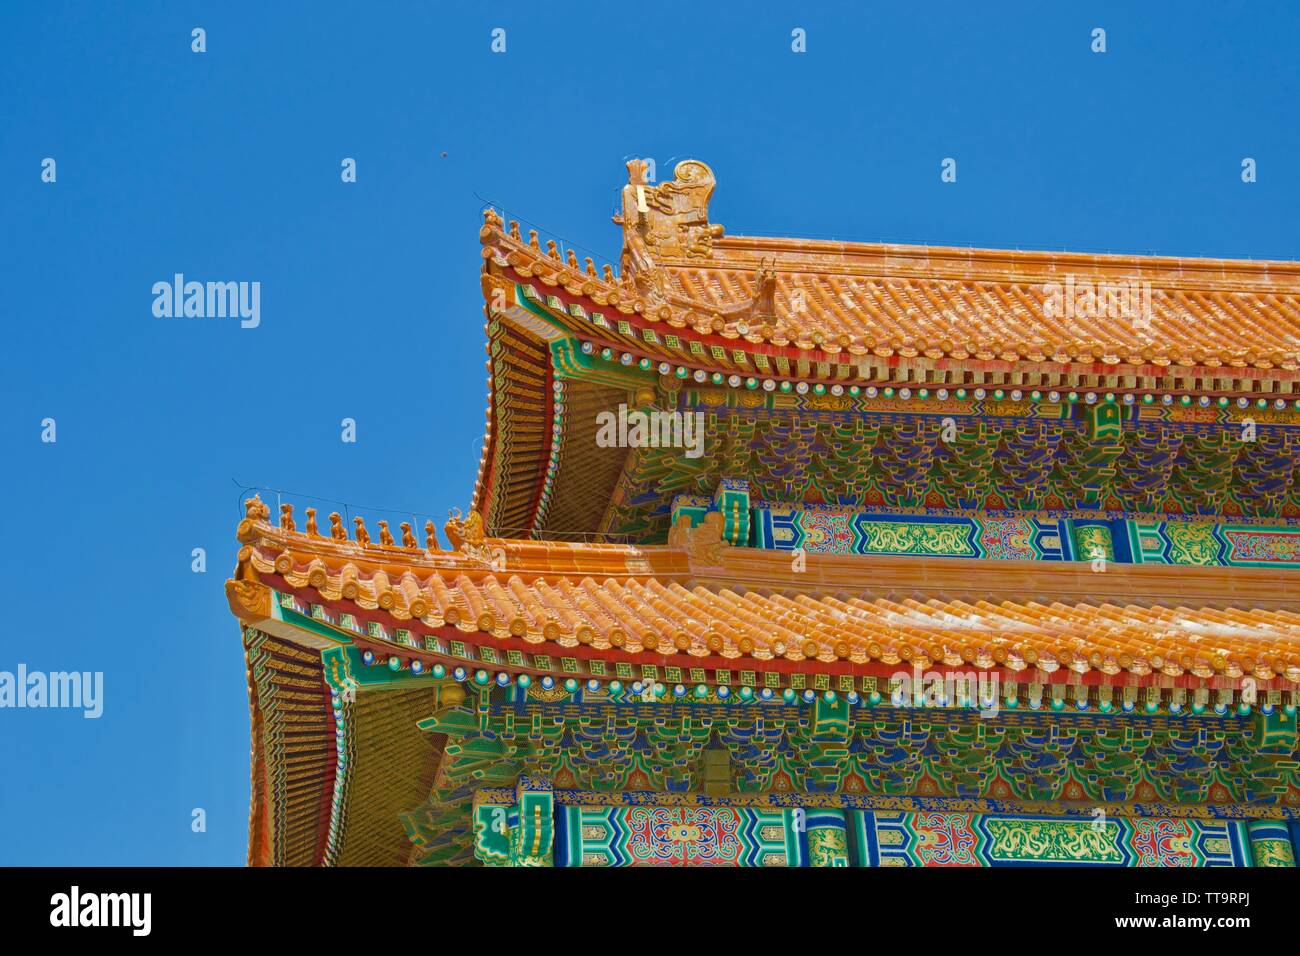 Osservando il tetto colorato di un tradizionale edificio Cinese nella Città Proibita di Pechino. Piastrelle di colore arancione con piccoli intagli della mitica anim Foto Stock